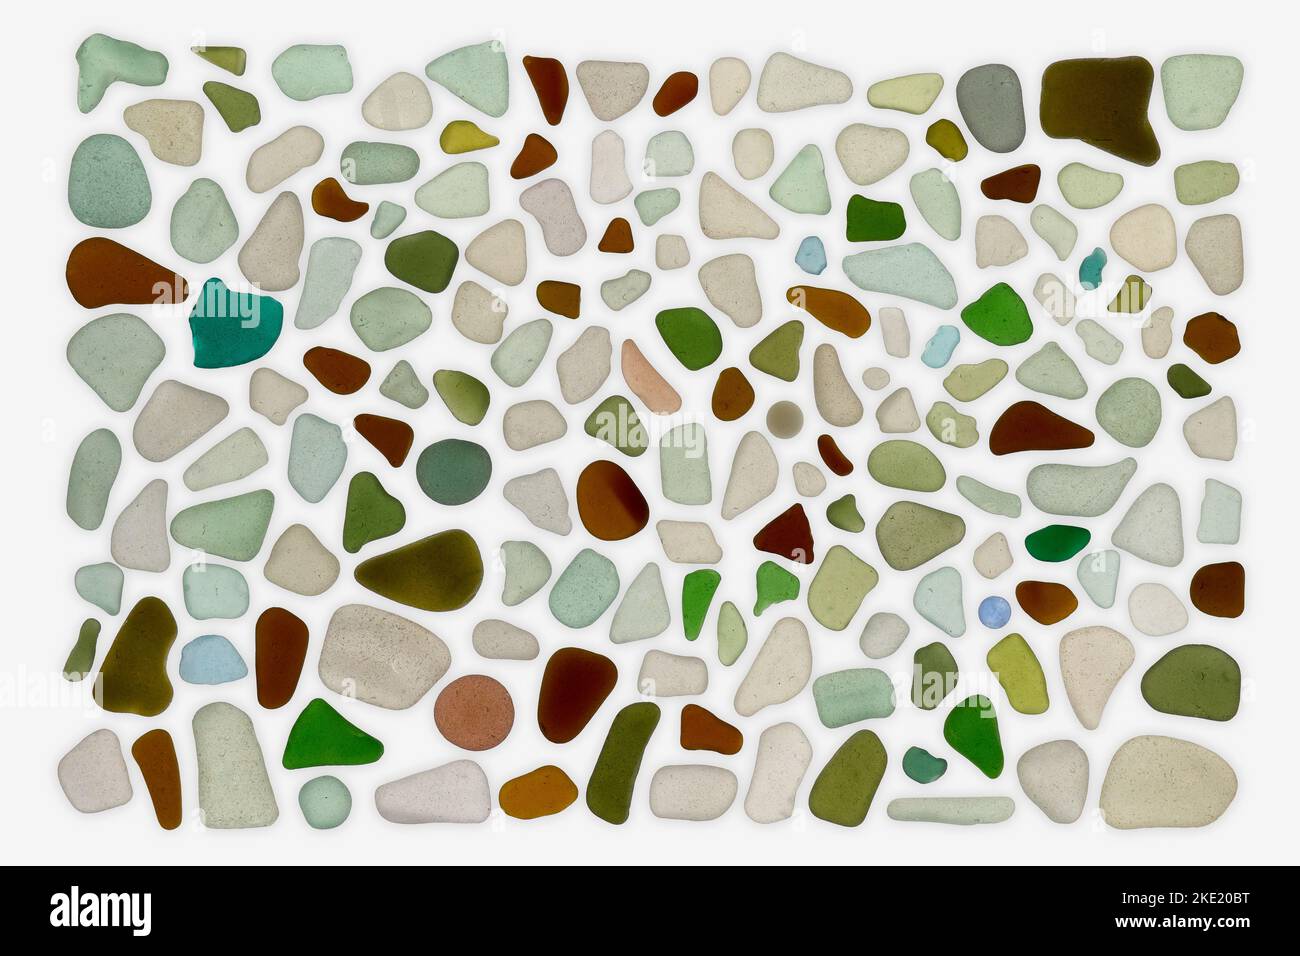 Verre de mer recueilli sur la plage, y compris des couleurs telles que le blanc, le vert marin, le vert émeraude, le brun et la fleur de maïs. Banque D'Images